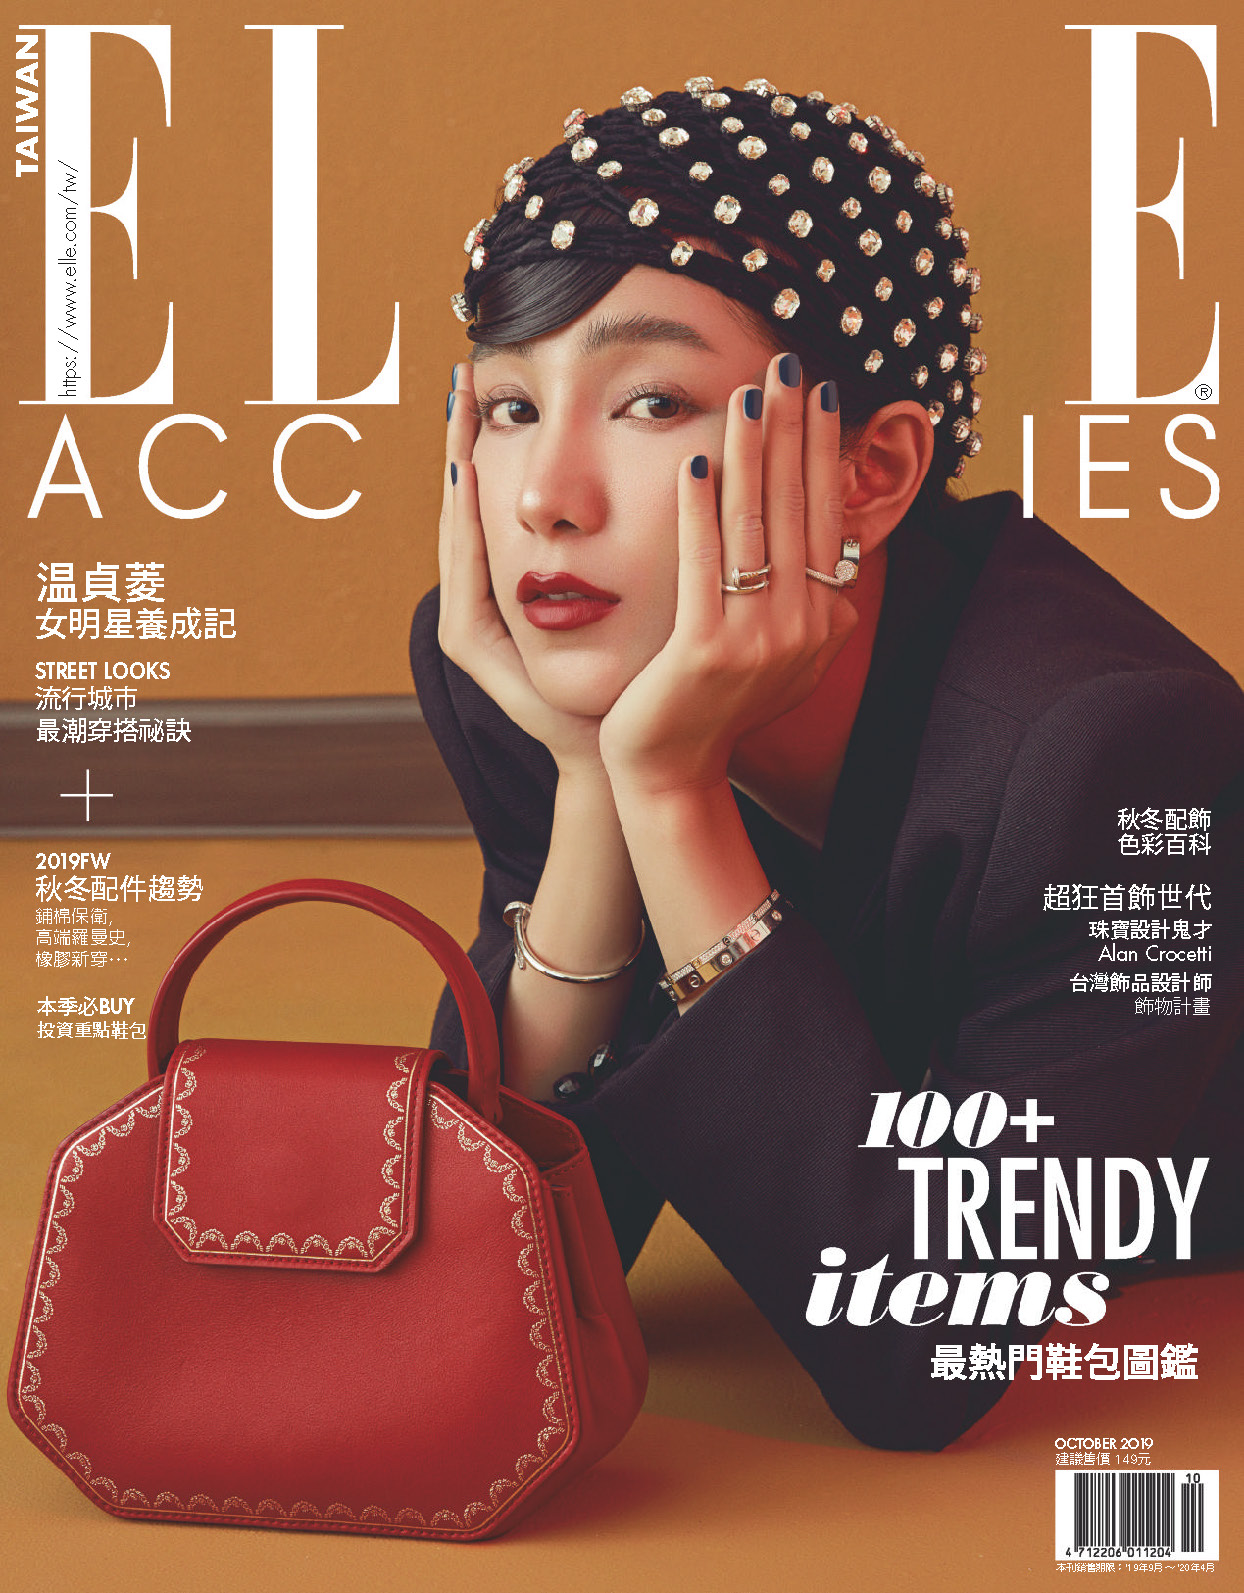 《Elle Accessories》台湾中文版女装流行配饰趋势杂志2019年10月刊